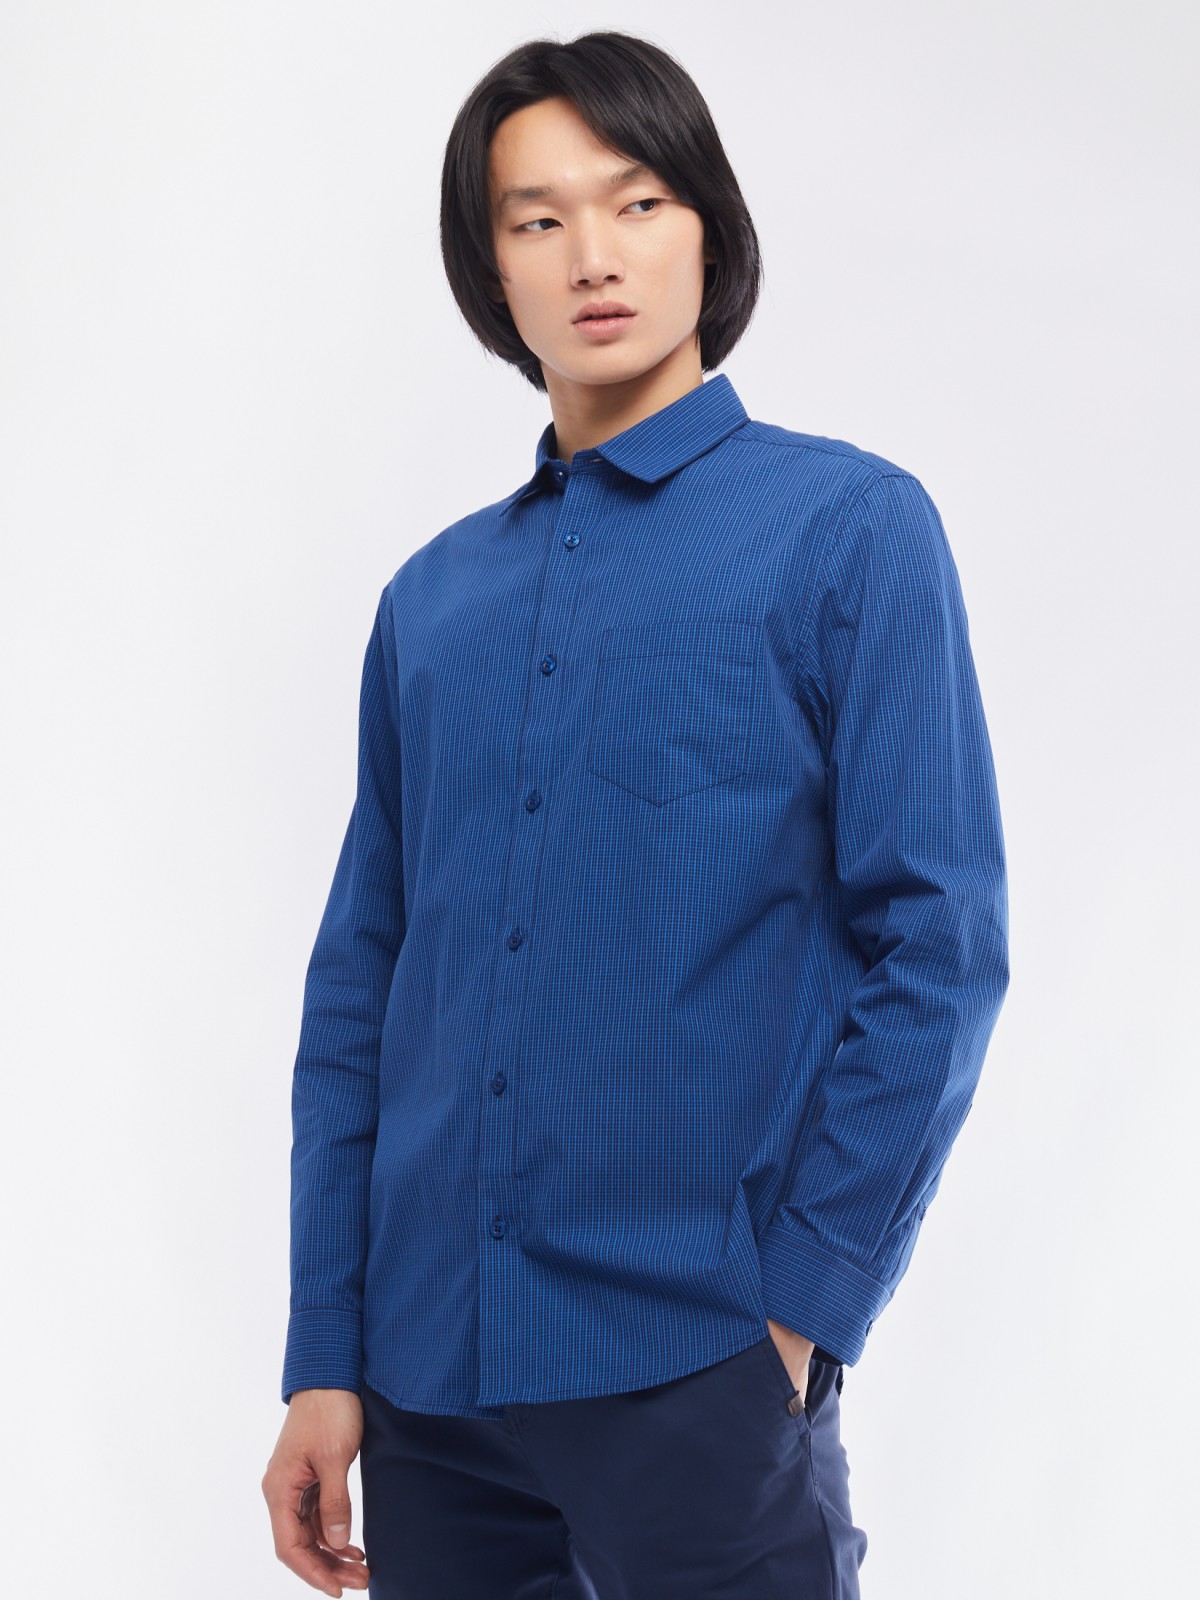 Офисная рубашка прямого силуэта с узором в клетку zolla 014112159062, цвет голубой, размер M - фото 3